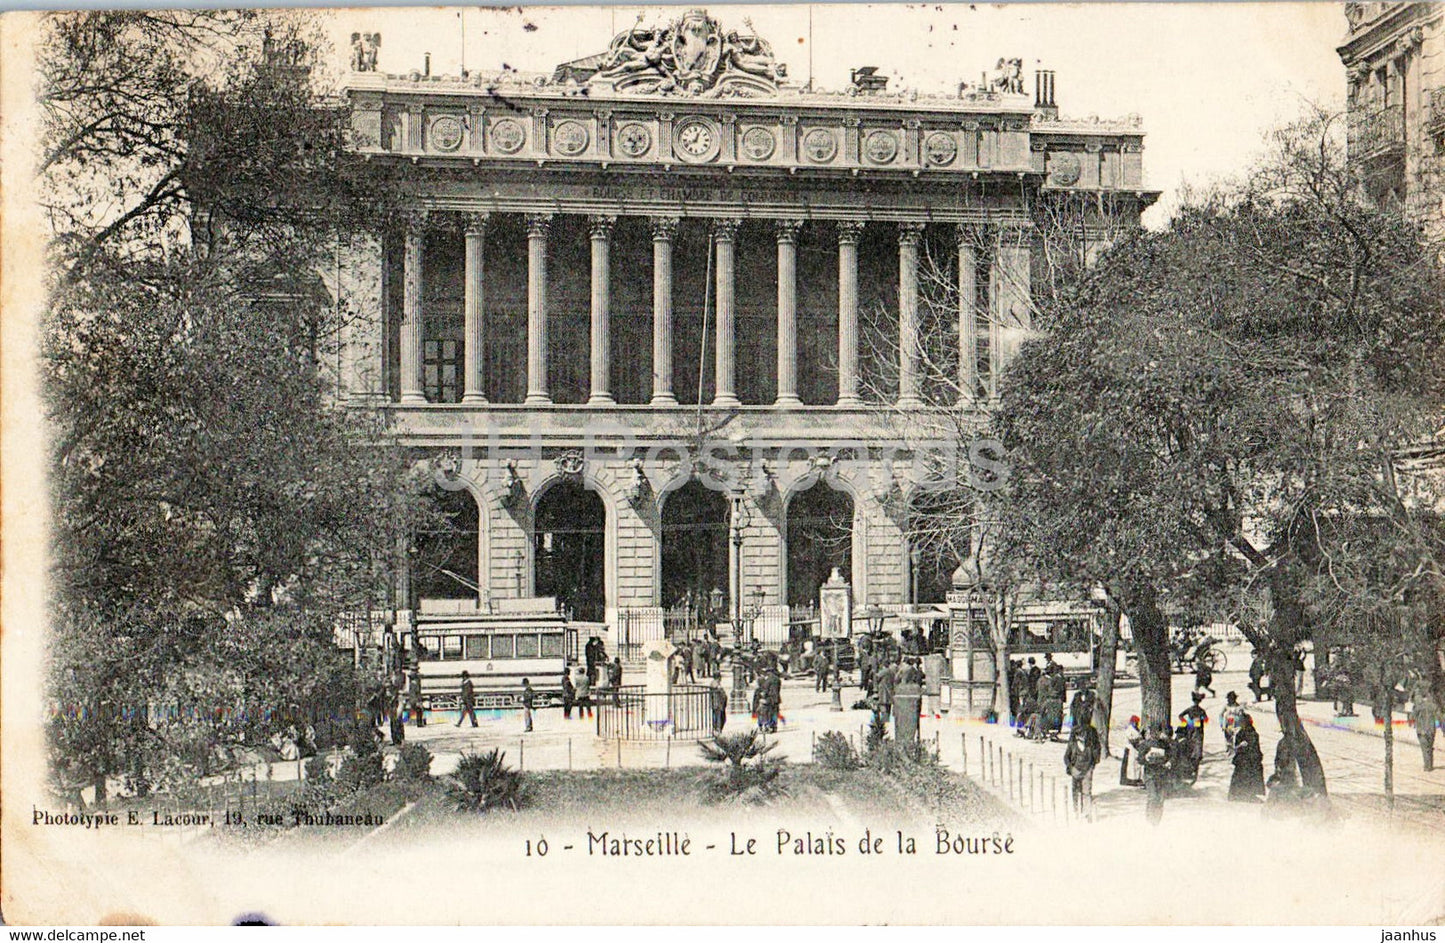 Marseille - Le Palais de La Bourse - 10 - tram - old postcard - 1904 - France - used - JH Postcards